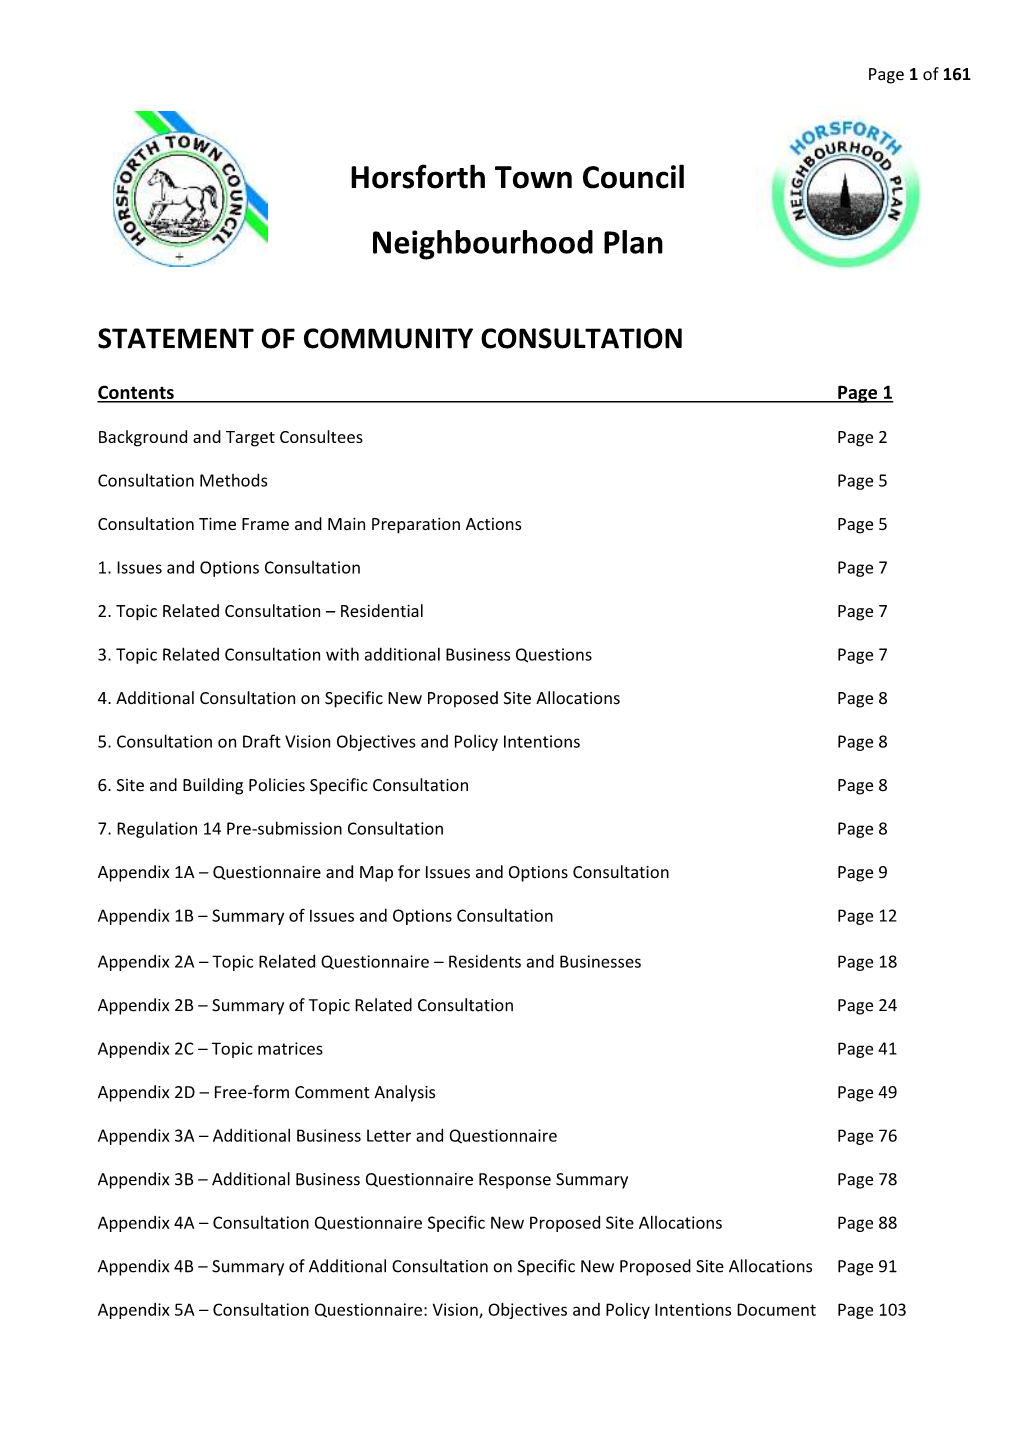 Horsforth Town Council Neighbourhood Plan